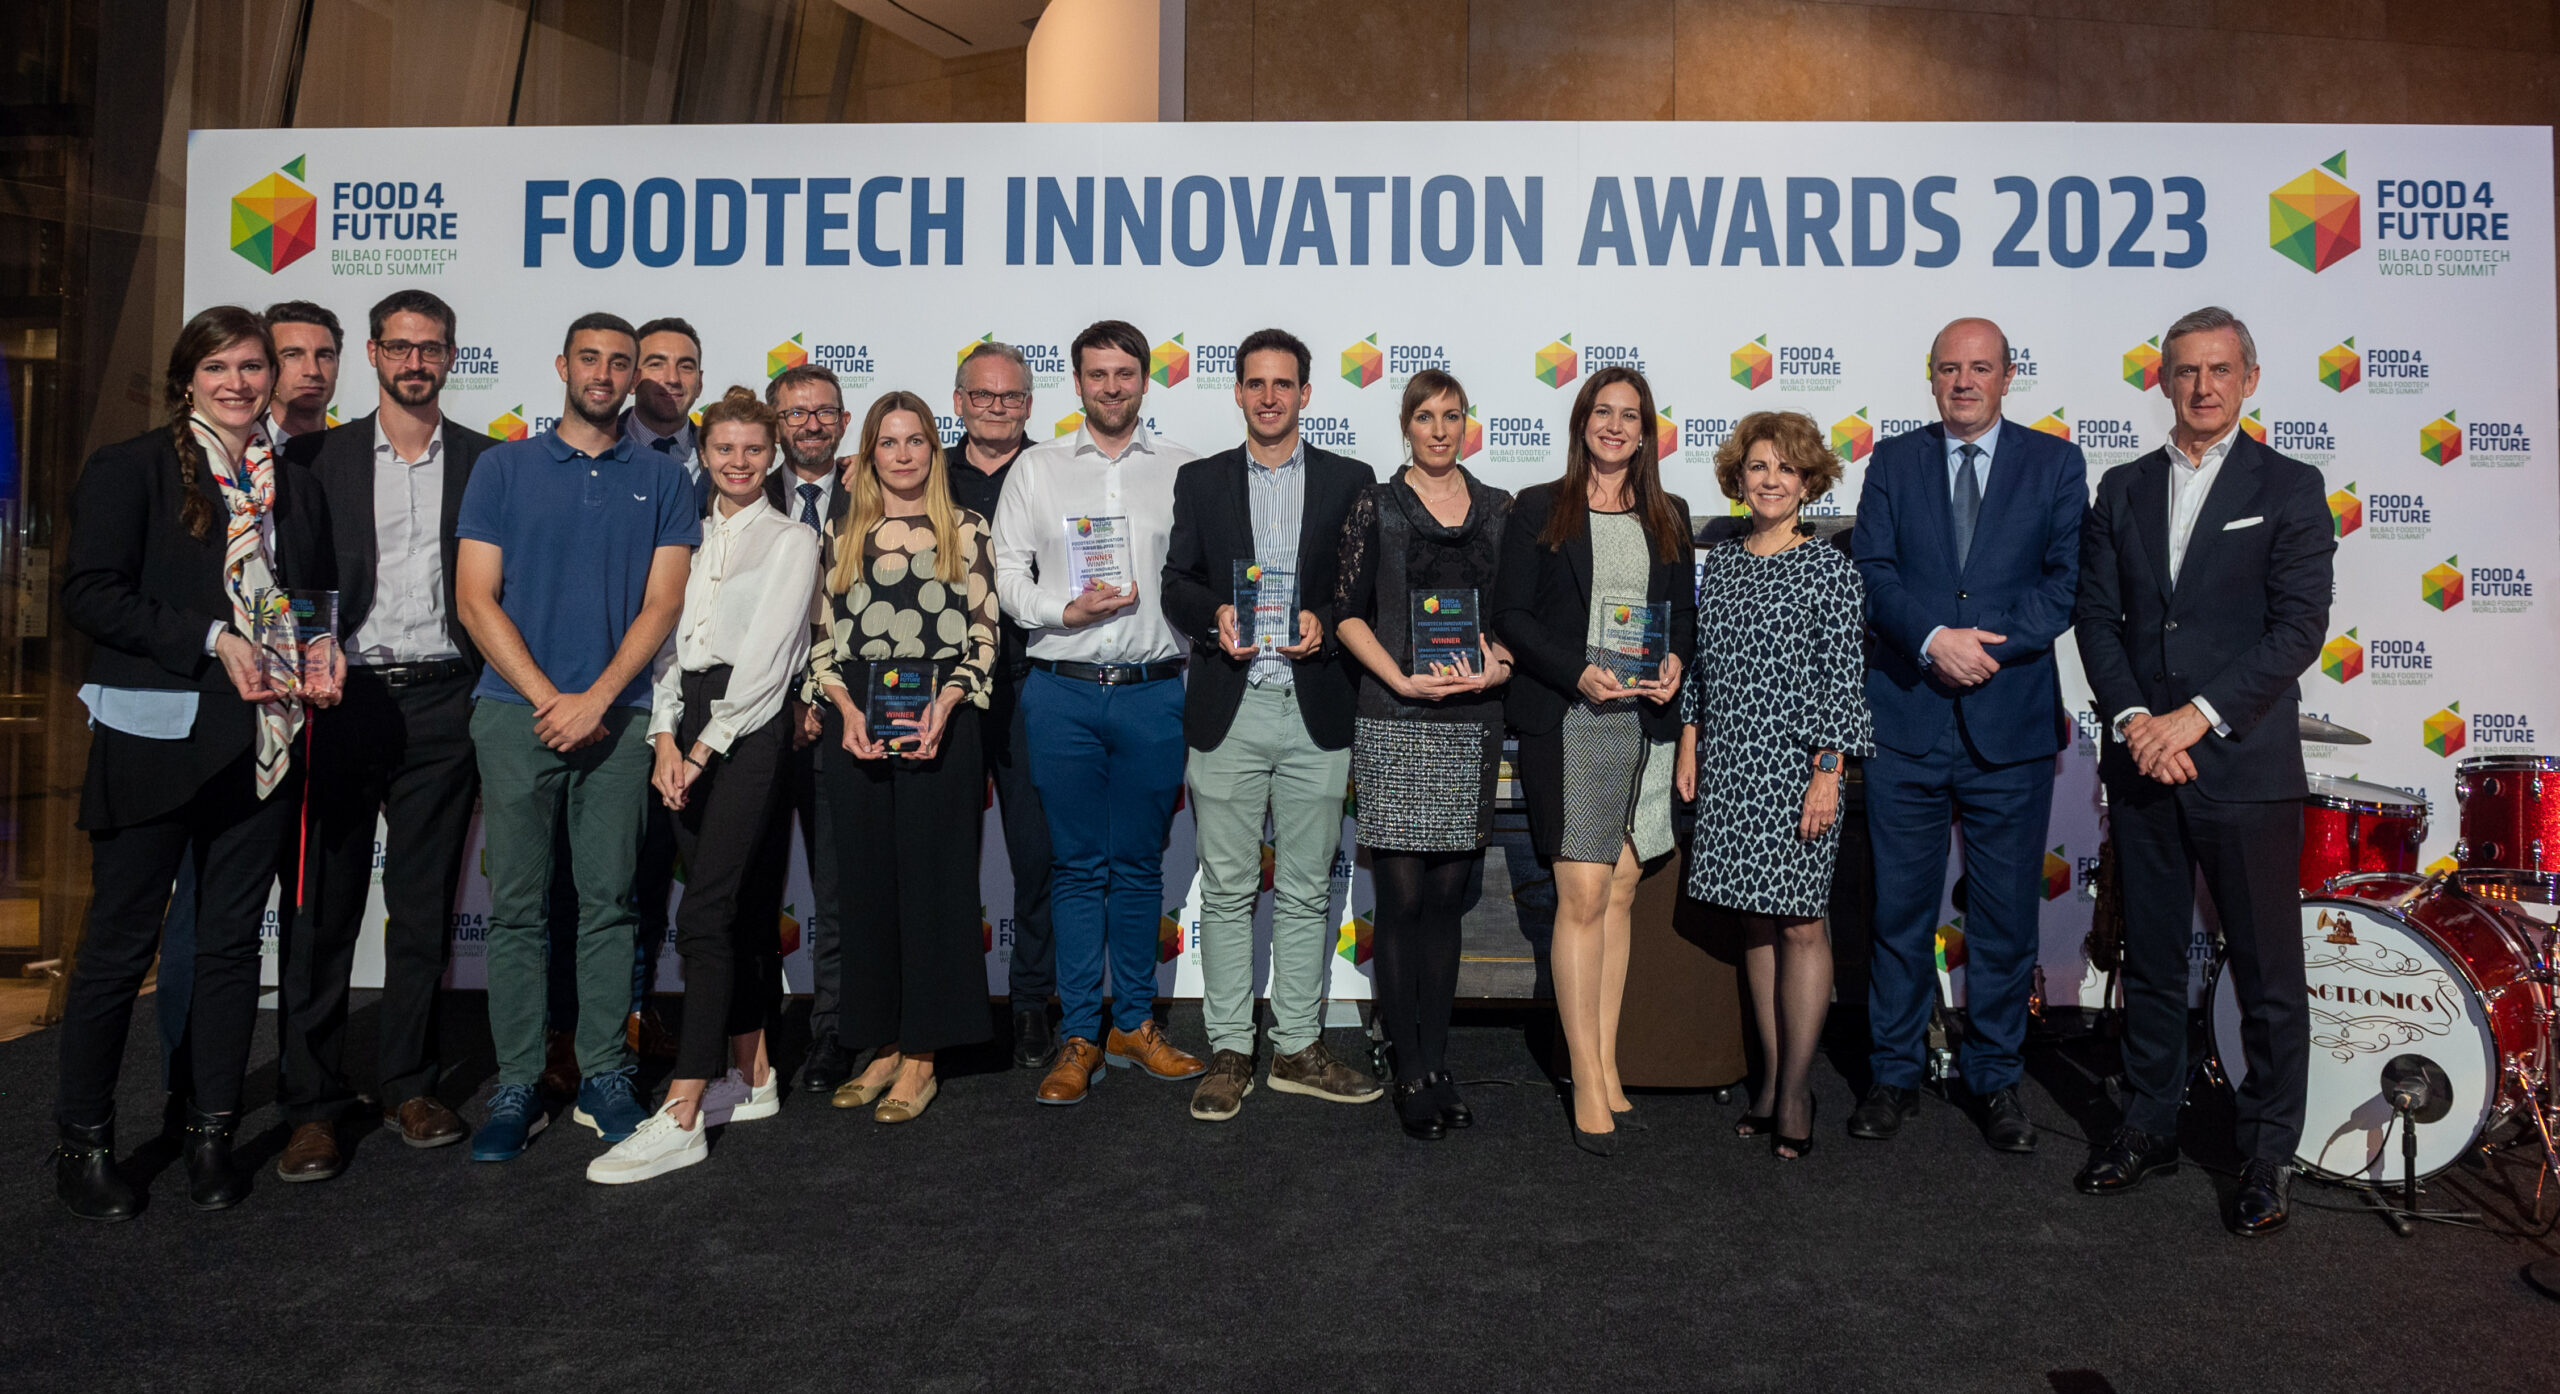 Los Foodtech Innovation Awards 2023 premian soluciones de alimentación circular, agricultura de precisión y proteínas bioactivas